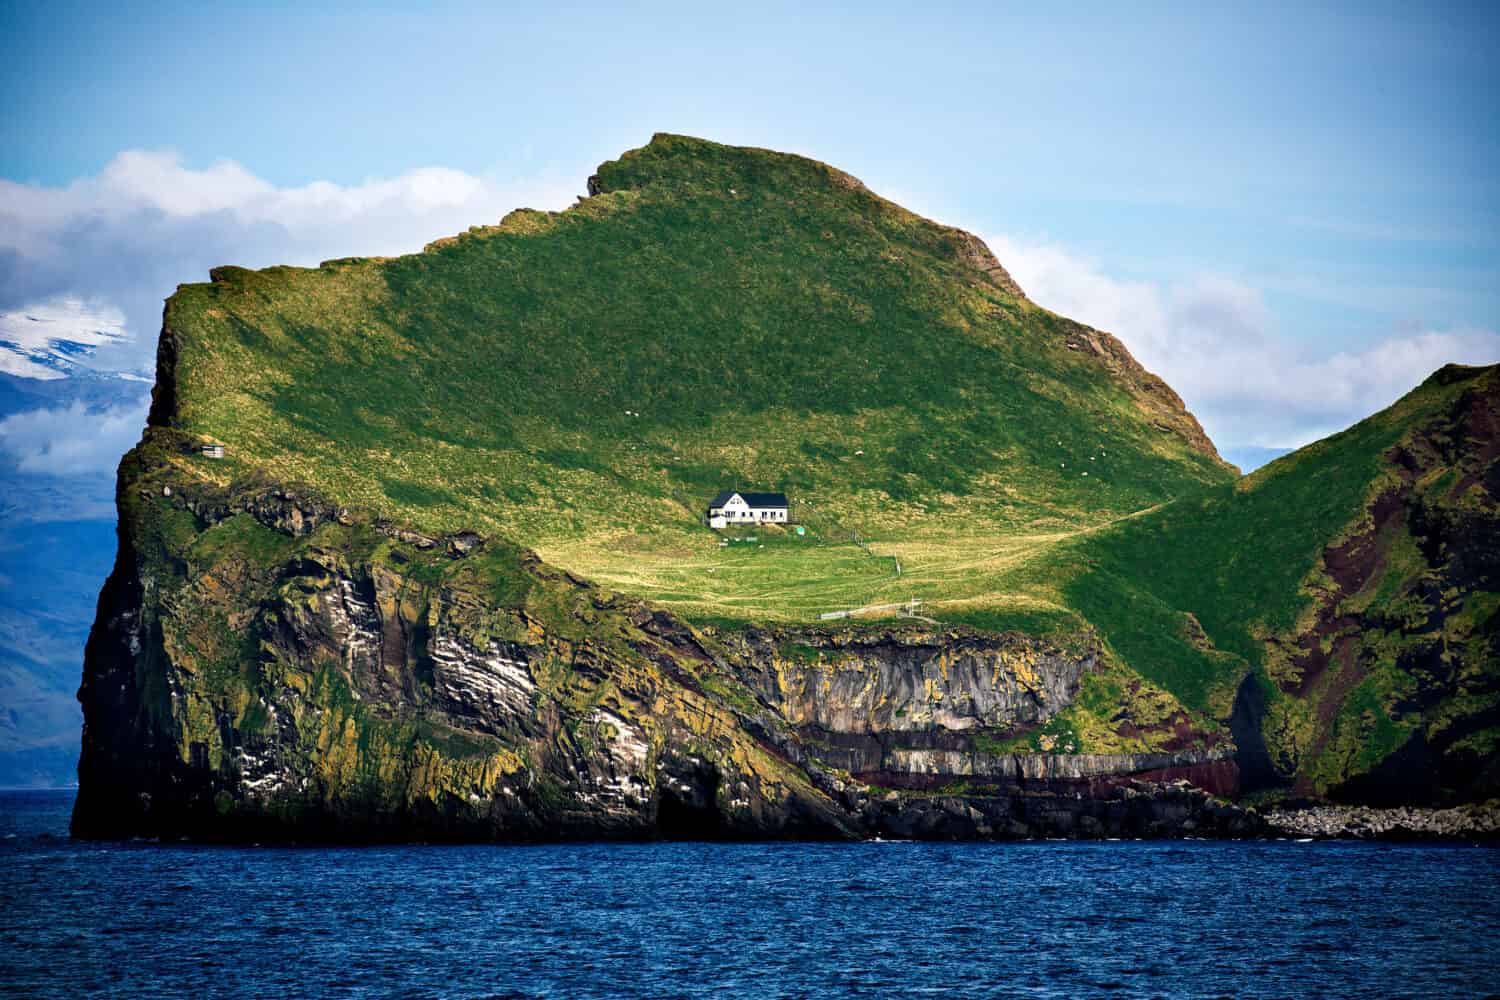 The World's Loneliest House in Elliðaey island